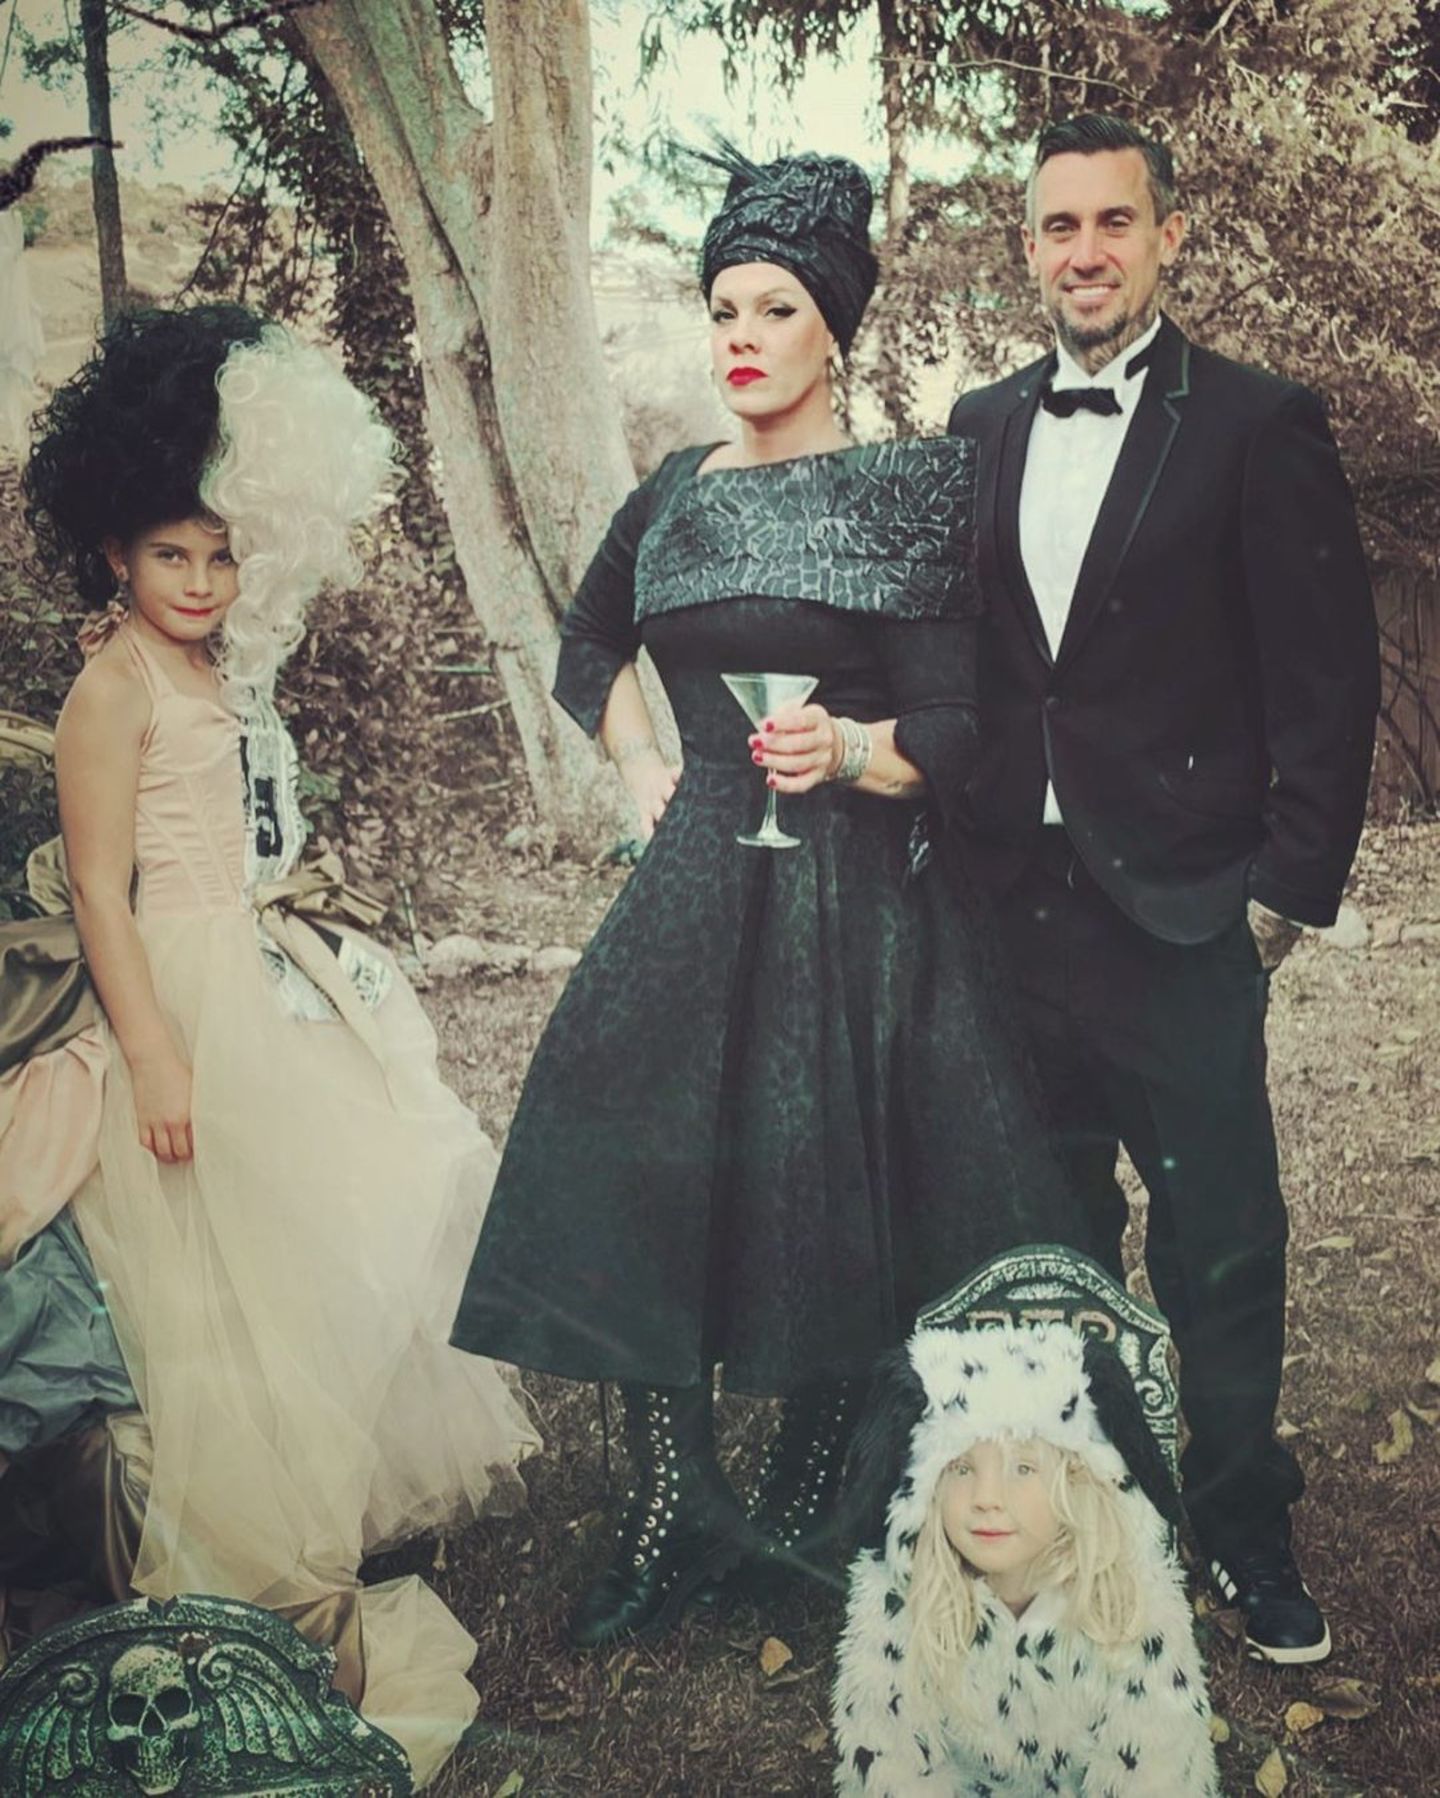 Pinks Tochter scheint den neuen Cruella-Film gesehen zu haben. Aber nicht nur Willow hat sich in Schale geworfen, die ganze Familie hat sich verkleidet und posiert für ein schaurig-schönes Familienporträt. 